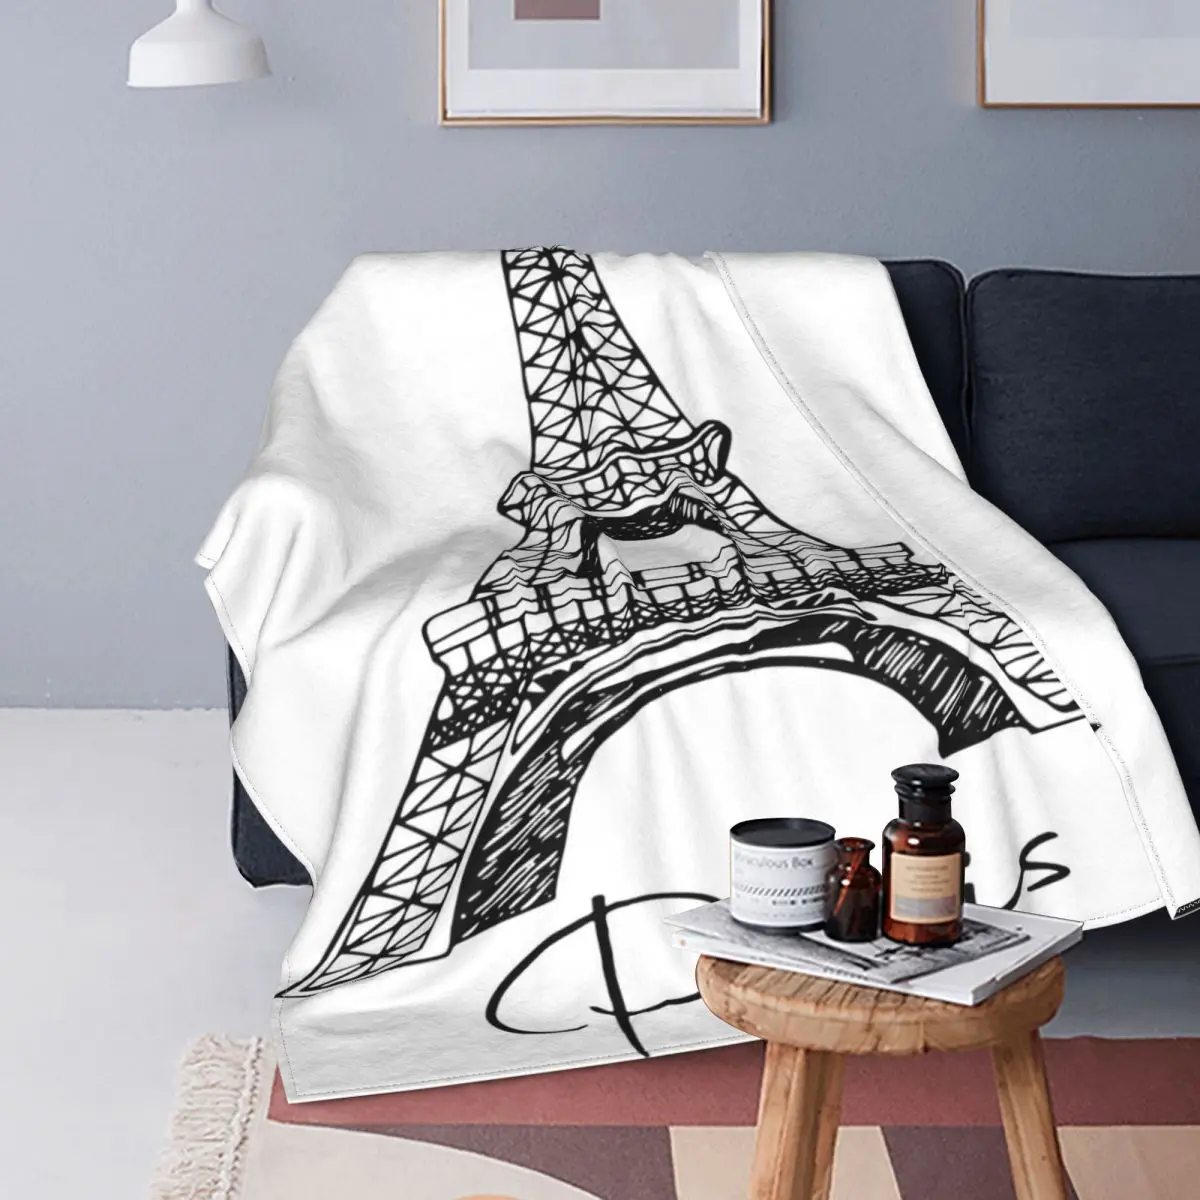 

Mantas de franela con estampado de la Torre Eiffel de París, ropa de cama cálida y transpirable, diseño dibujado a mano, colchas